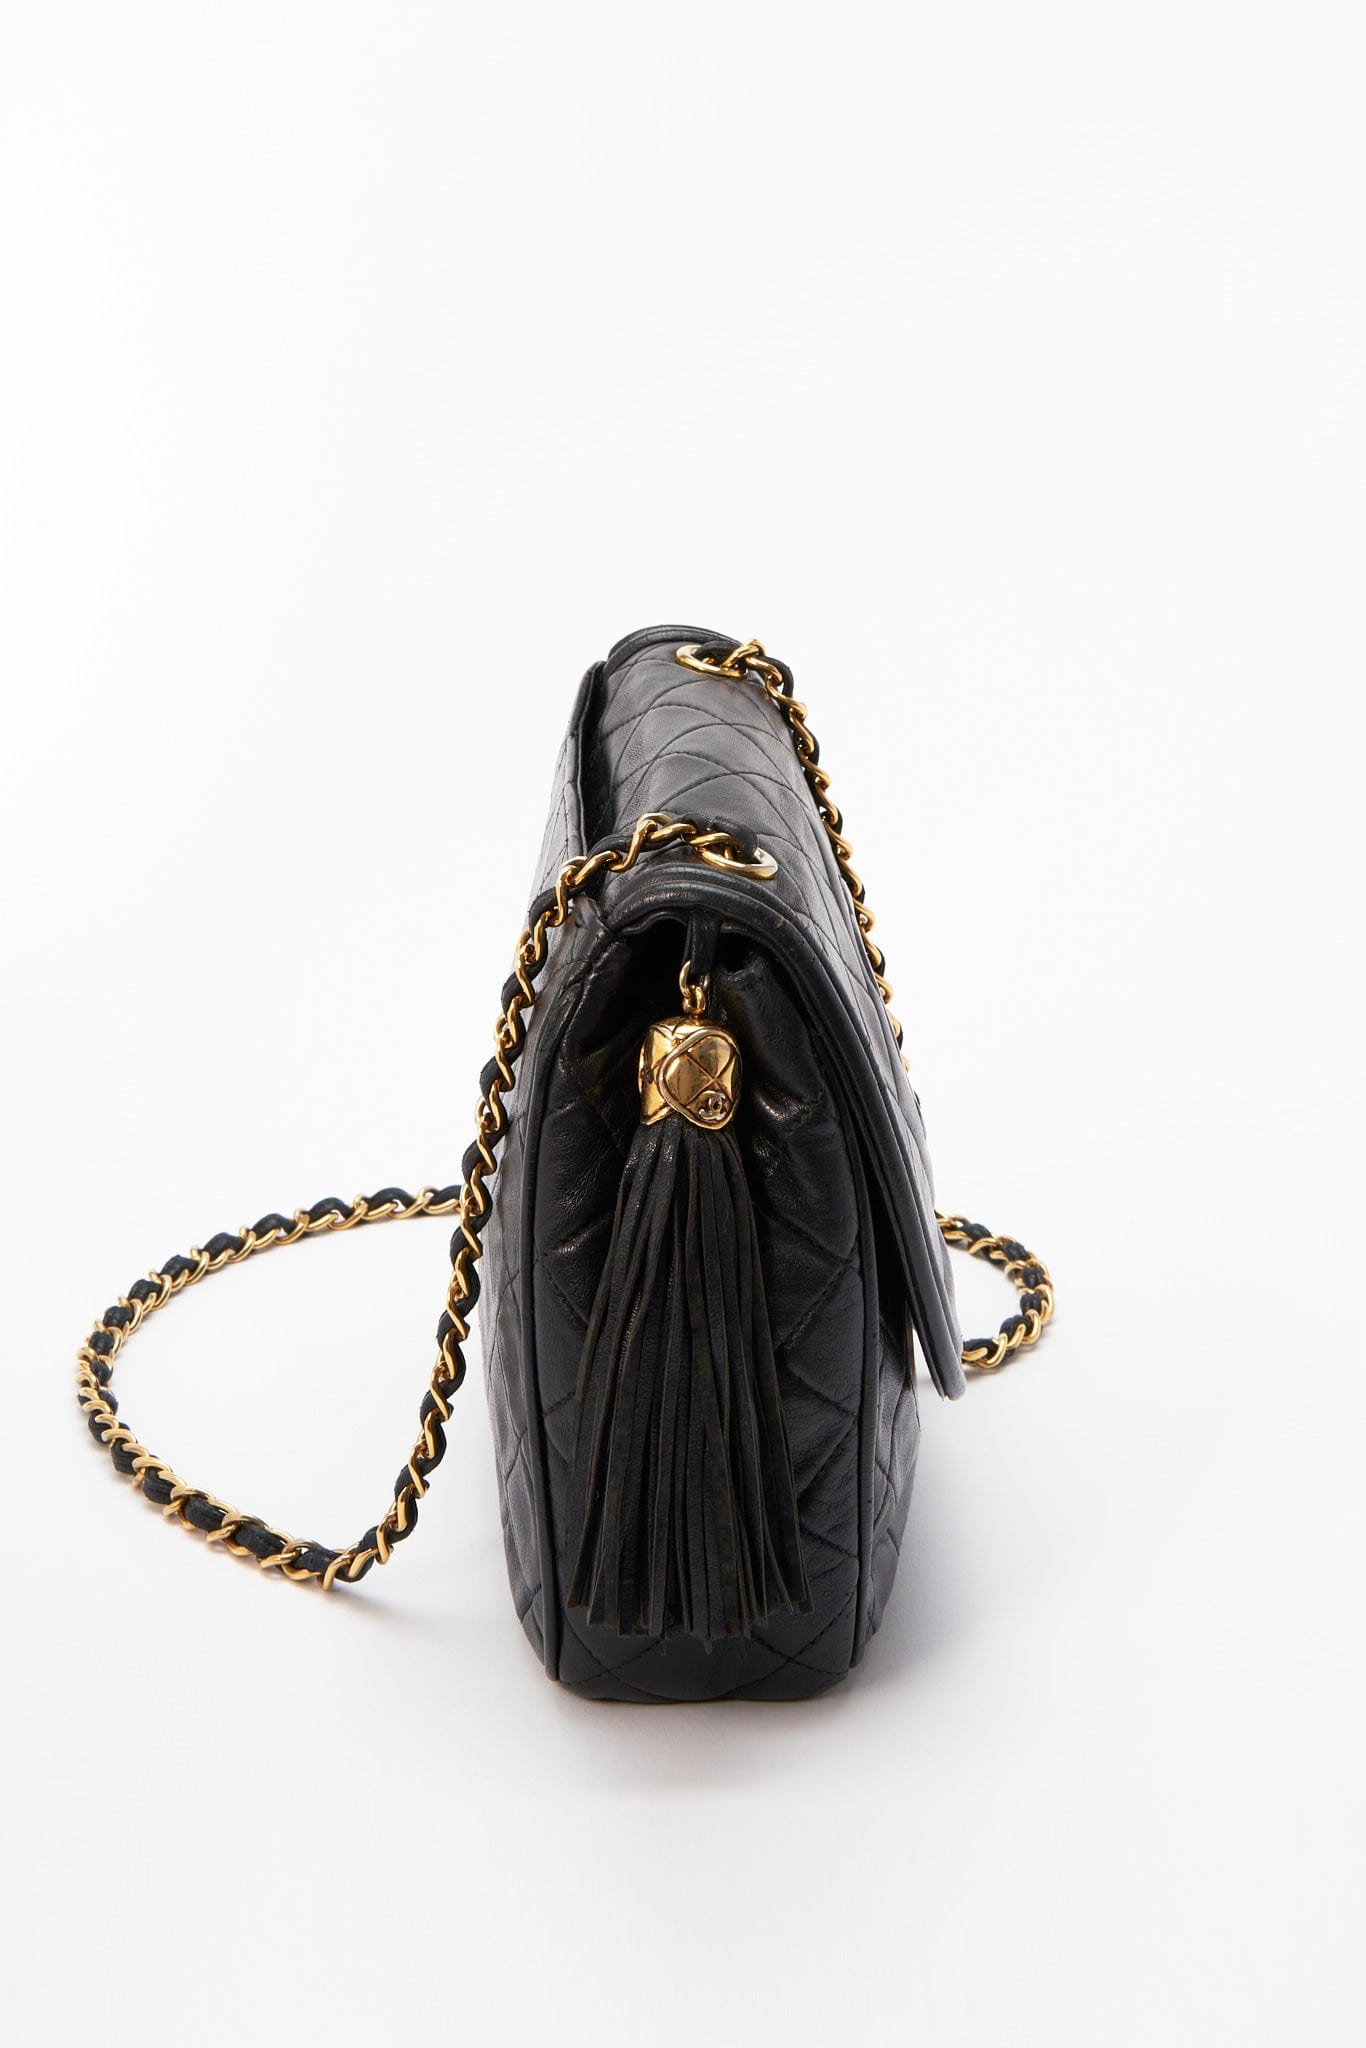 Vintage Chanel Classic Medium Double Flap Bag Black Chevron